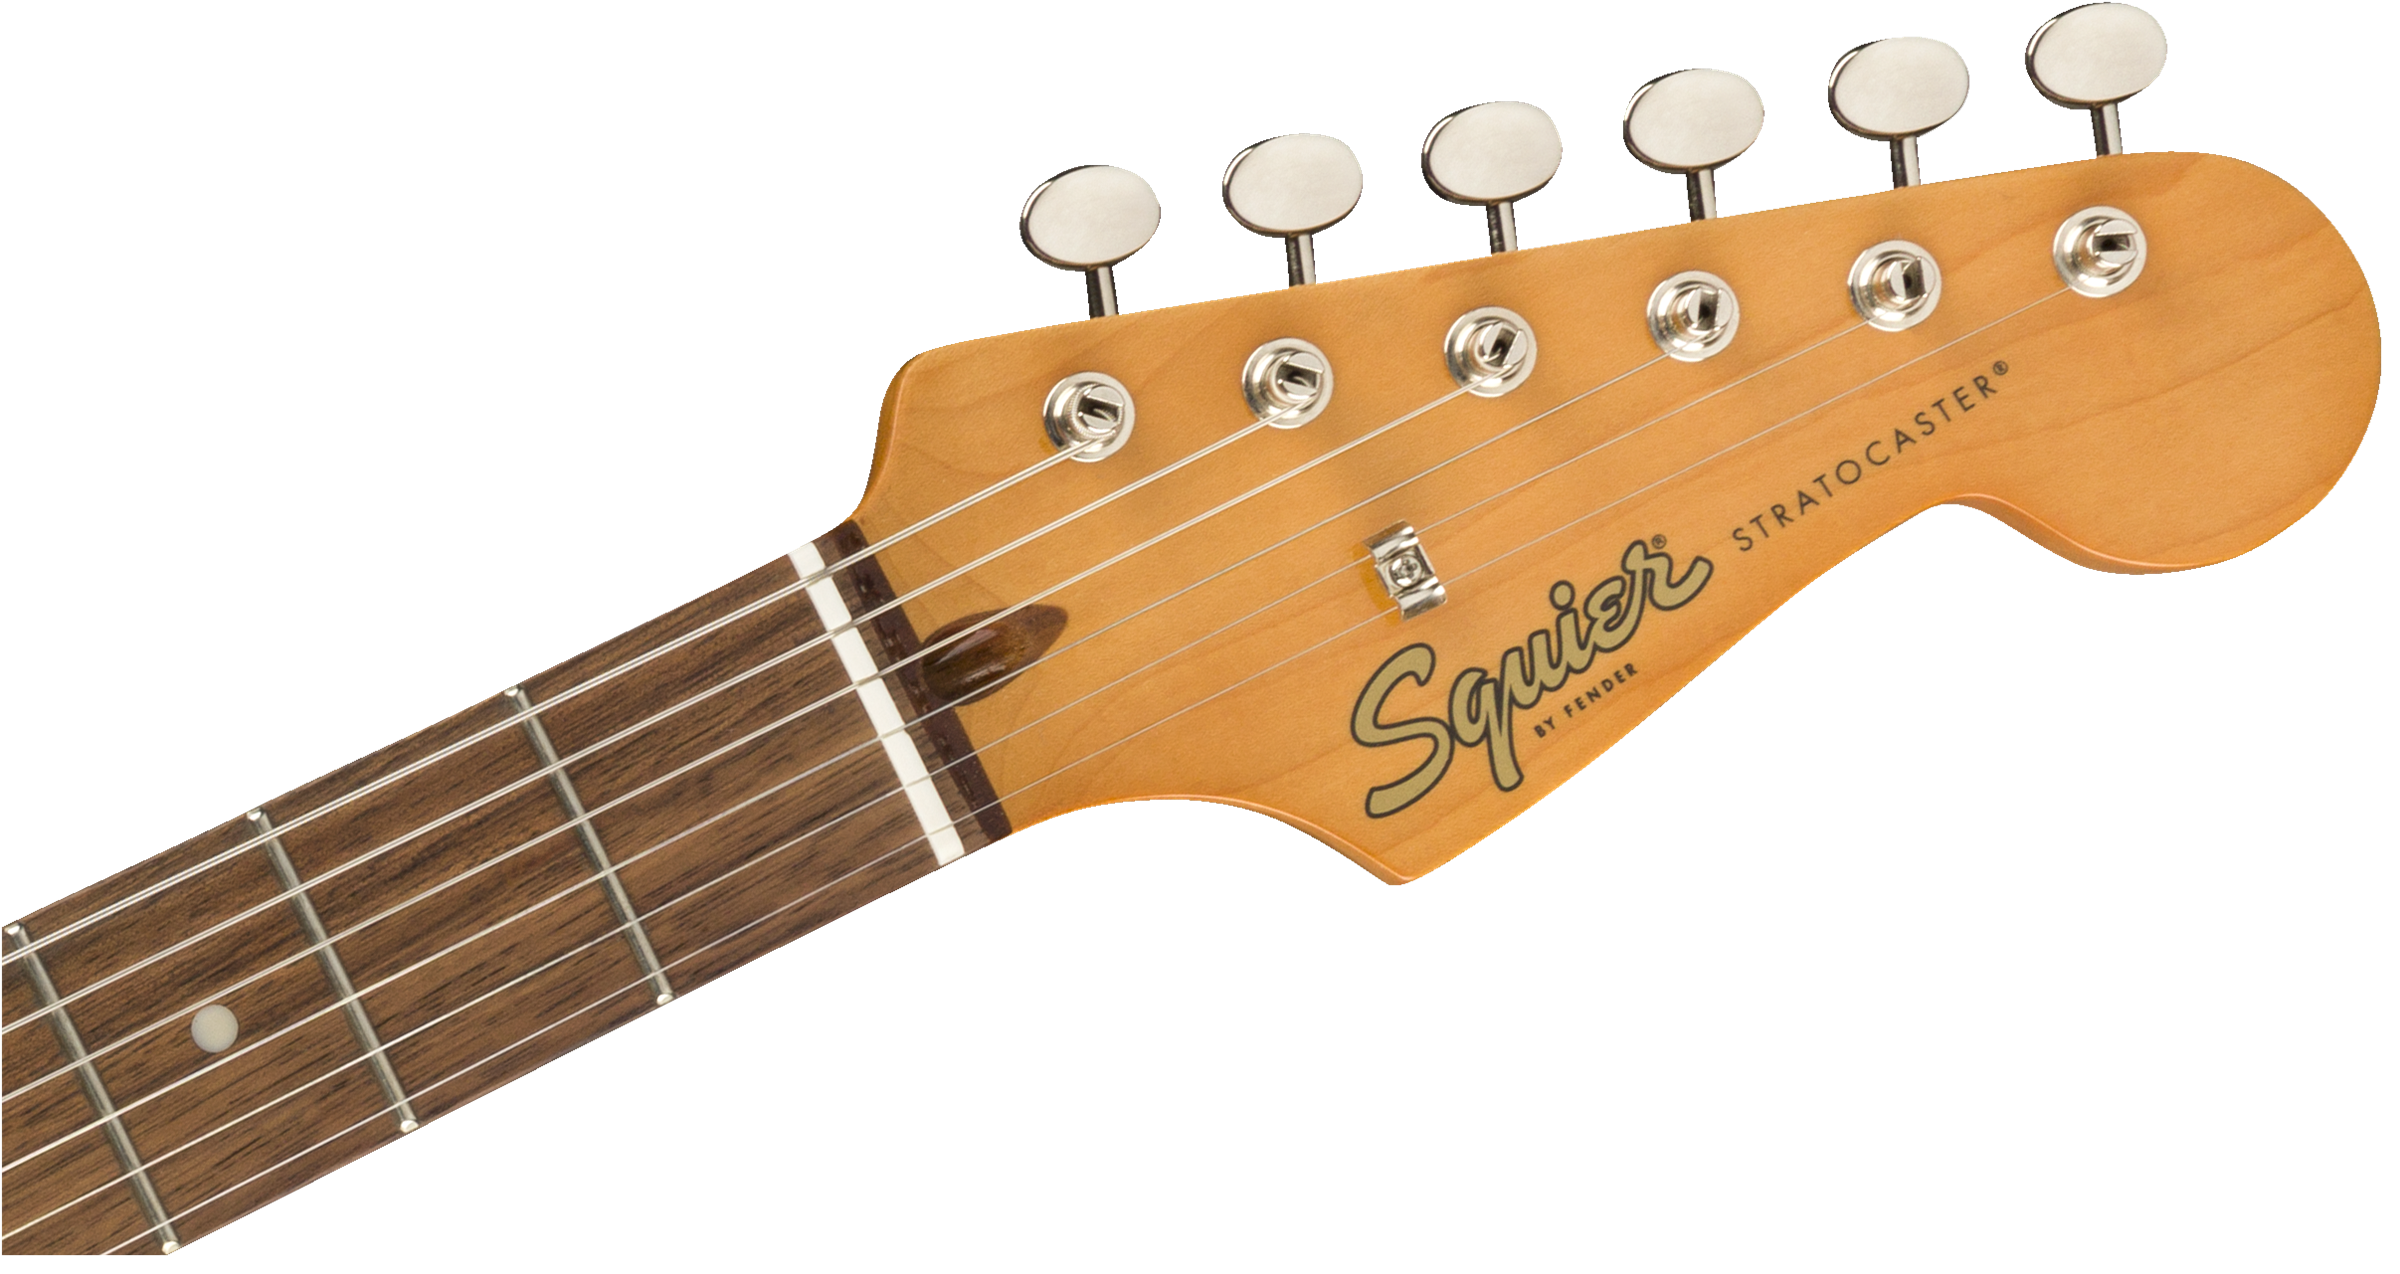 Stratocaster Classic Vibe 60s 3-Color Sunburst